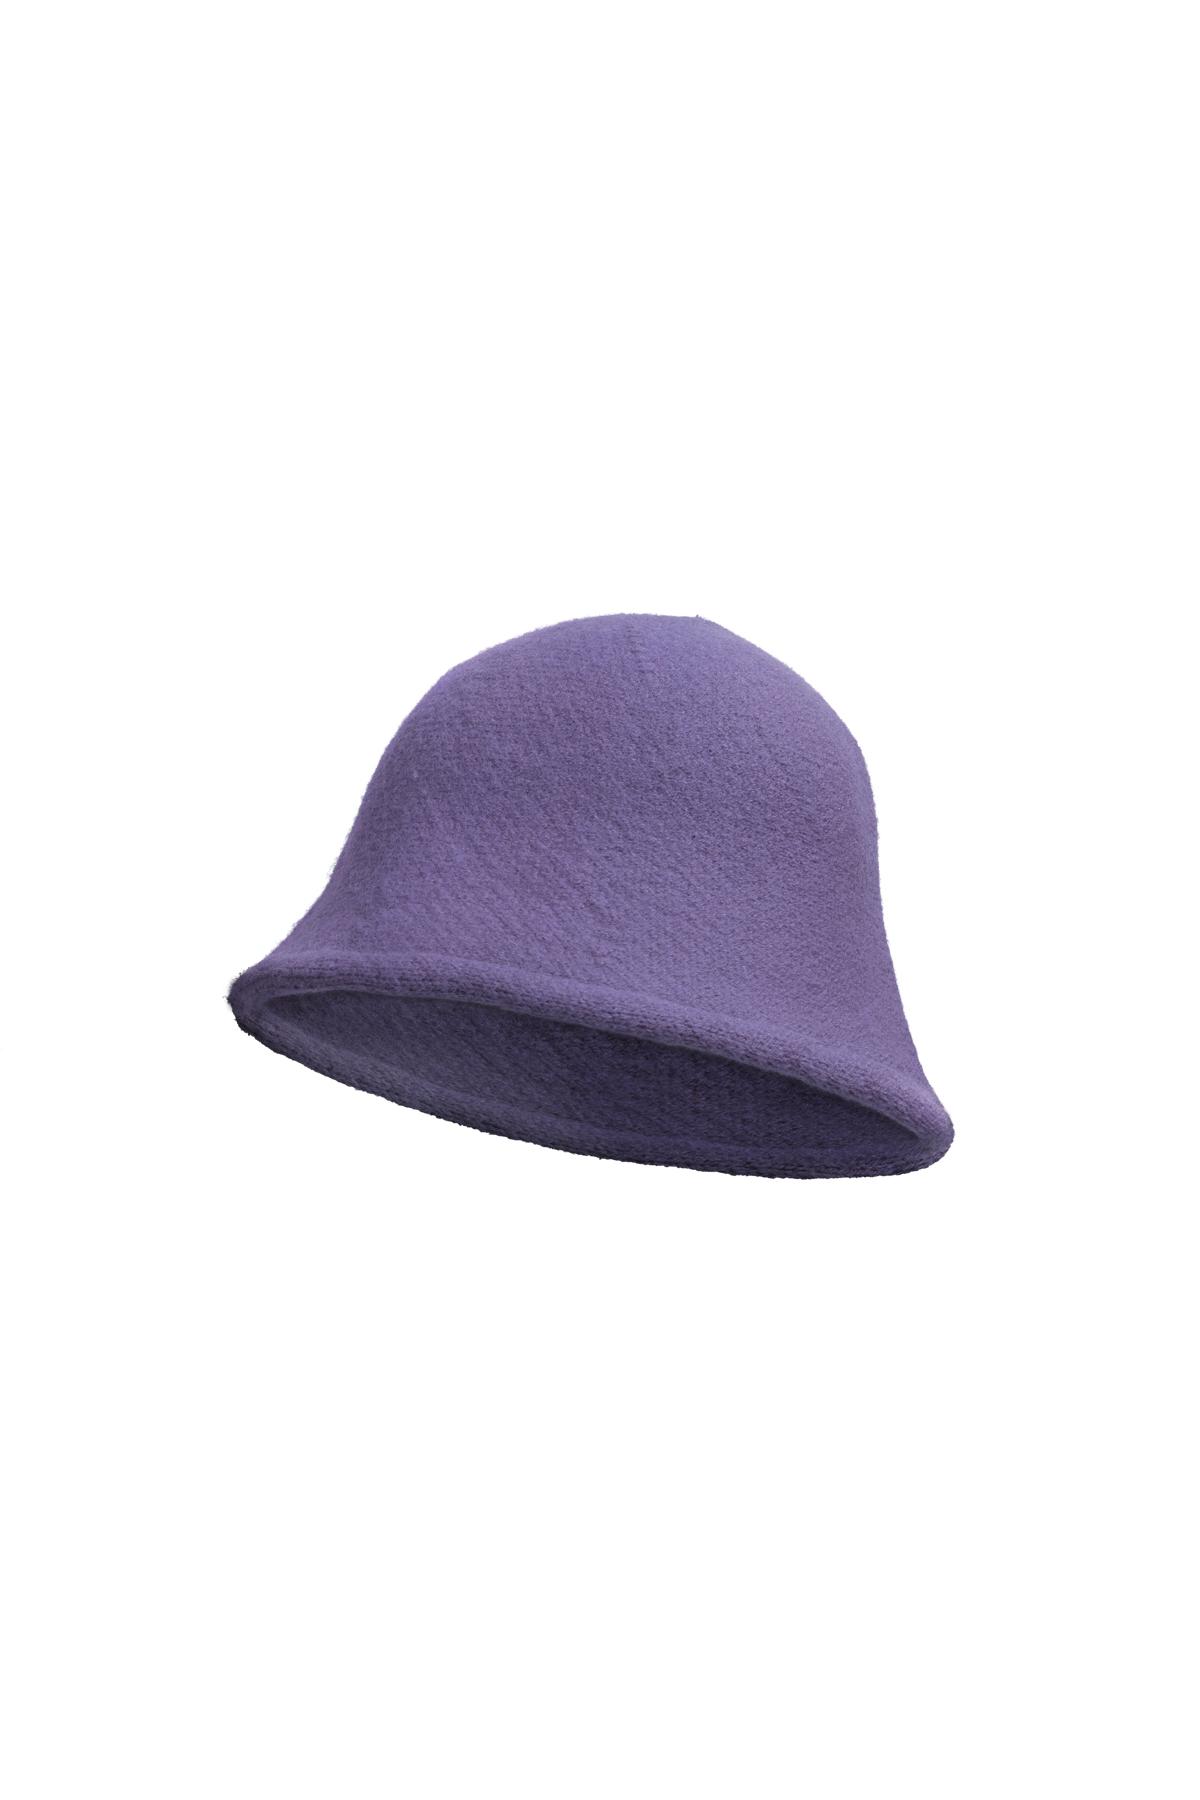 Bucket hat solid color Purple Acrylic h5 